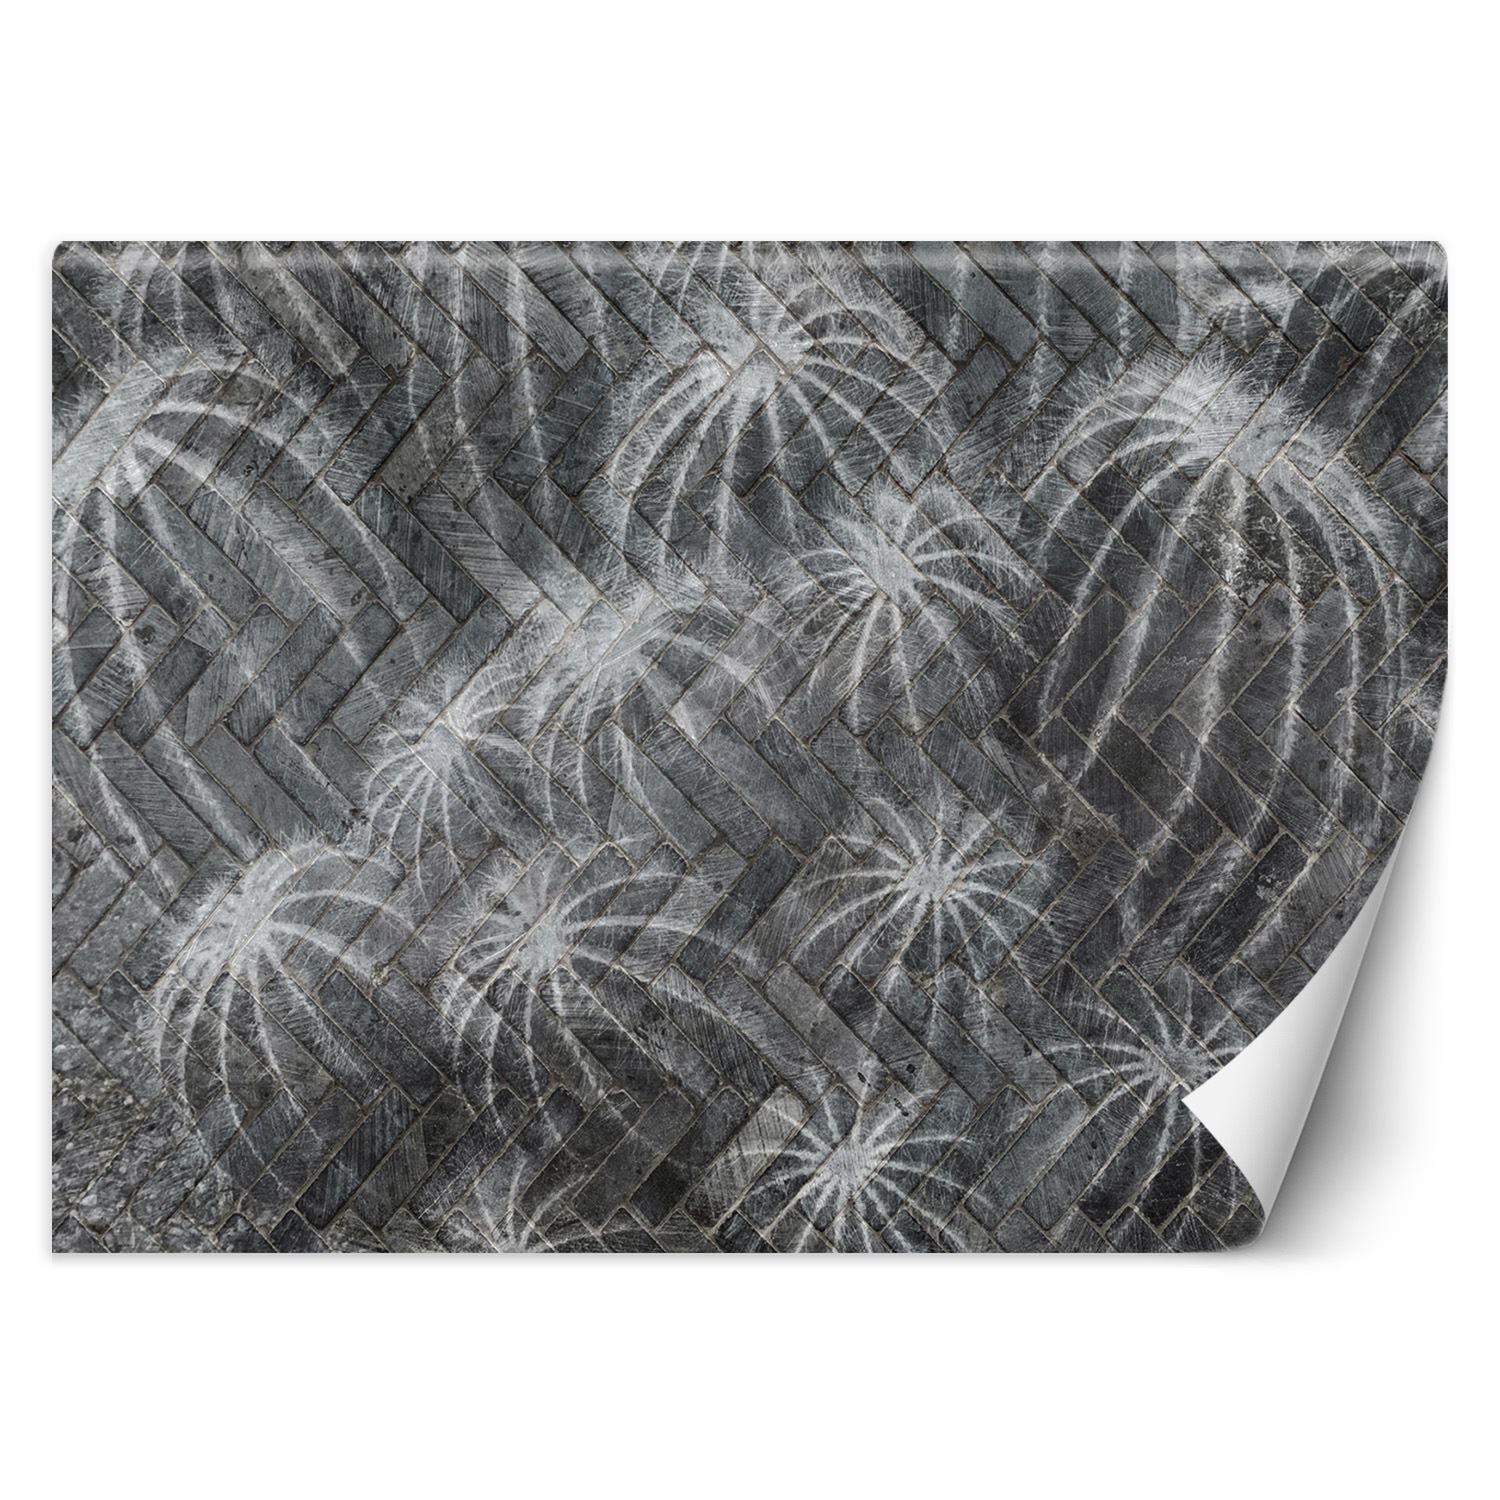 Trend24 – Behang – Cactussen In Grijs – Vliesbehang – Behang Woonkamer – Fotobehang – 400x280x2 cm – Incl. behanglijm